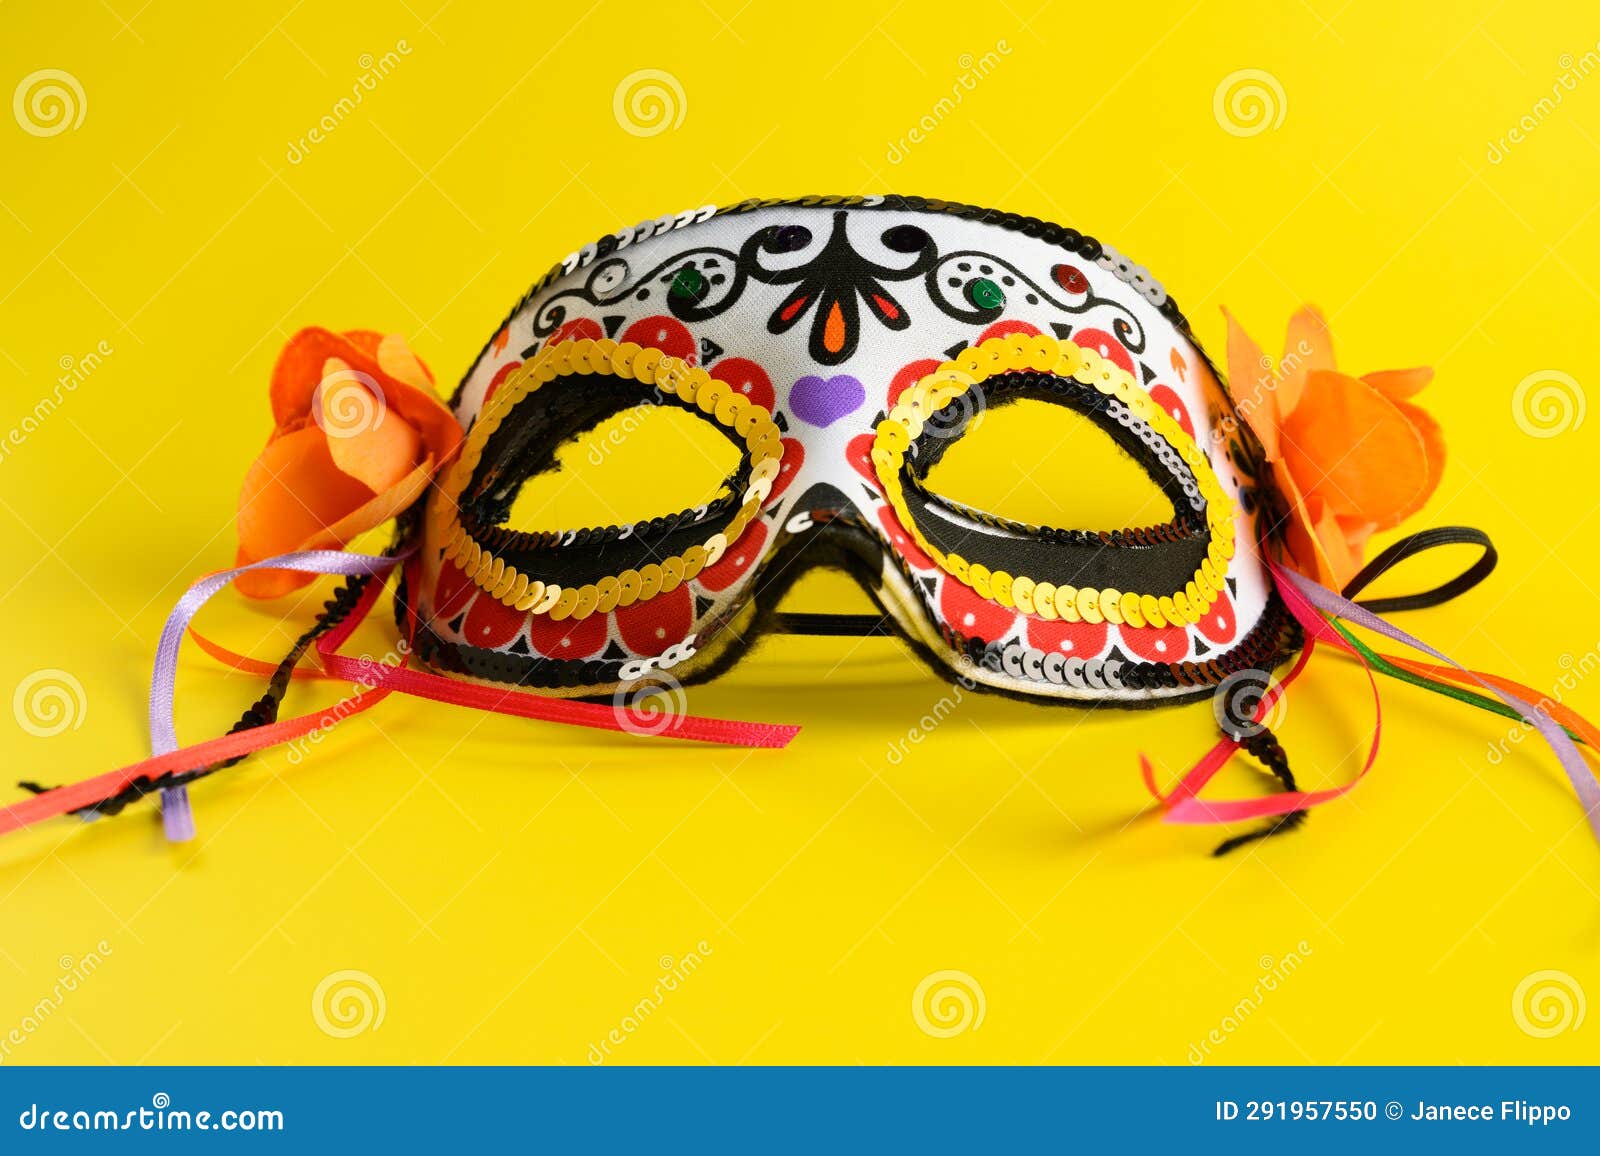 decorative day of the dead or dia de los muertos mask or halloween mask. calaveras or calaca